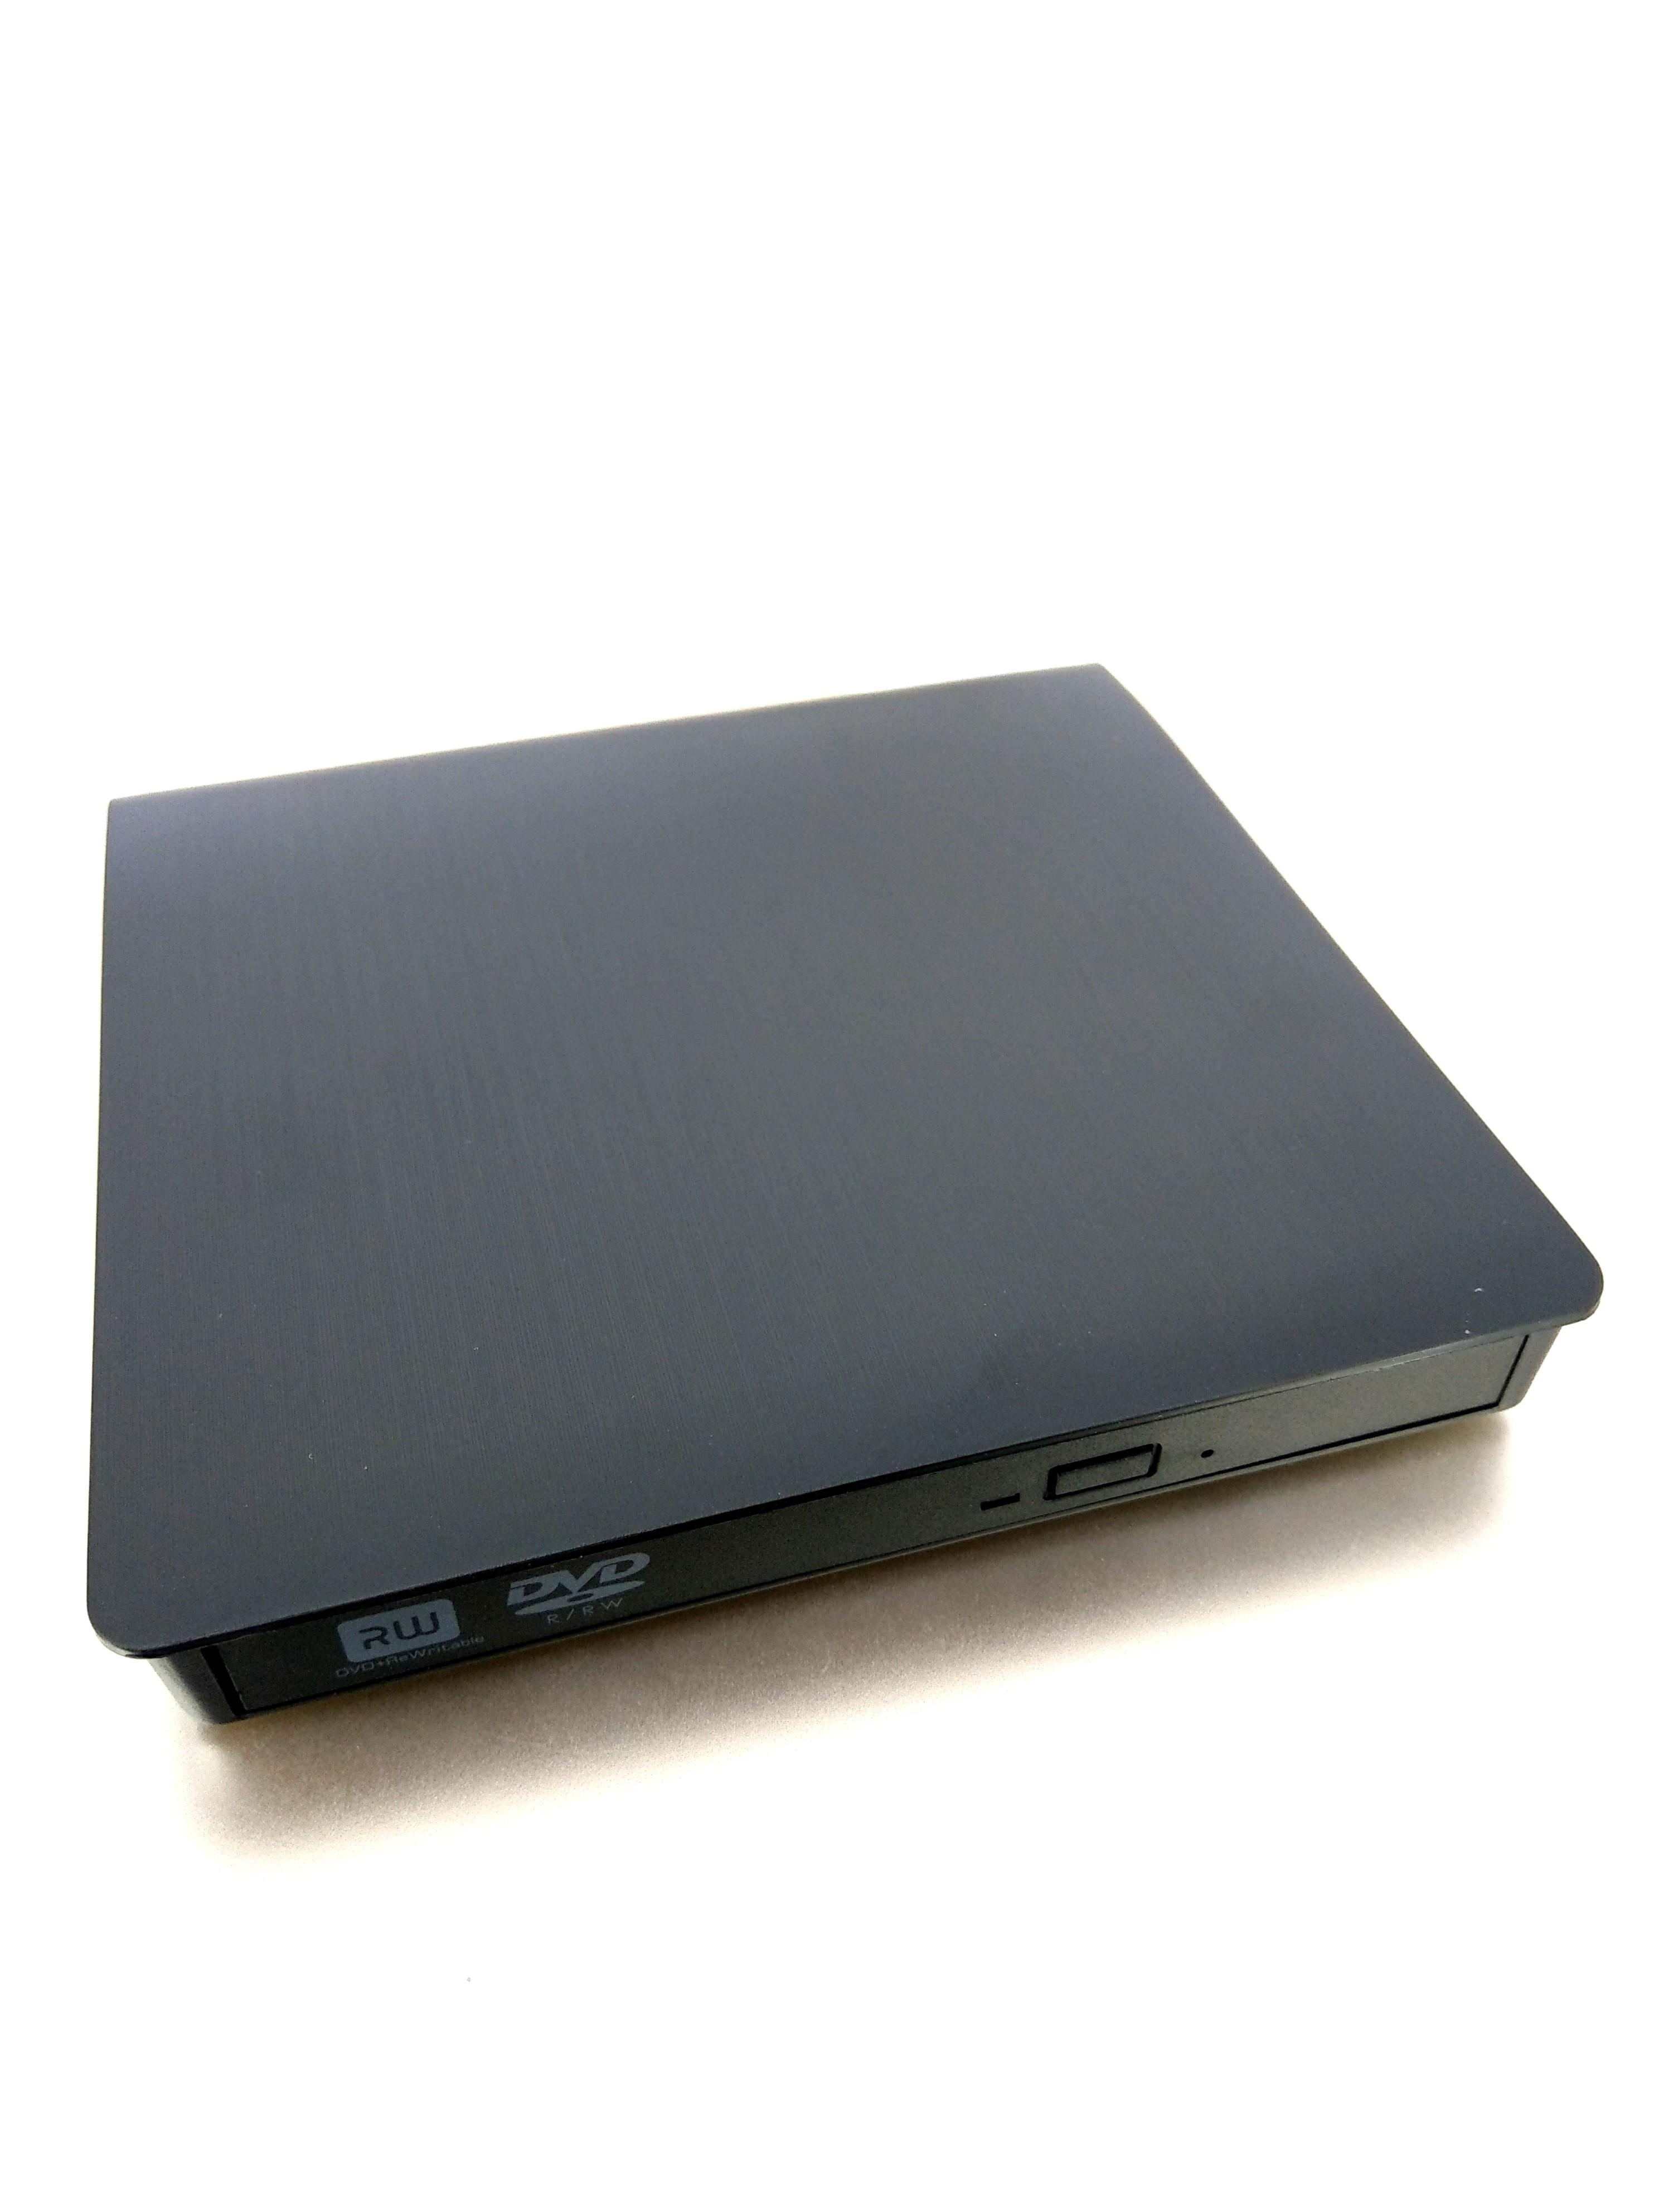 VSHOP® Graveur DVD Externe USB 3,0/USB 2.0 Lecteur Blu-ray USB 3.0 Portable  Ultra Slim Graveur de CD-RW DVD-RW Compatible avec Windows(XP/7/8/10/